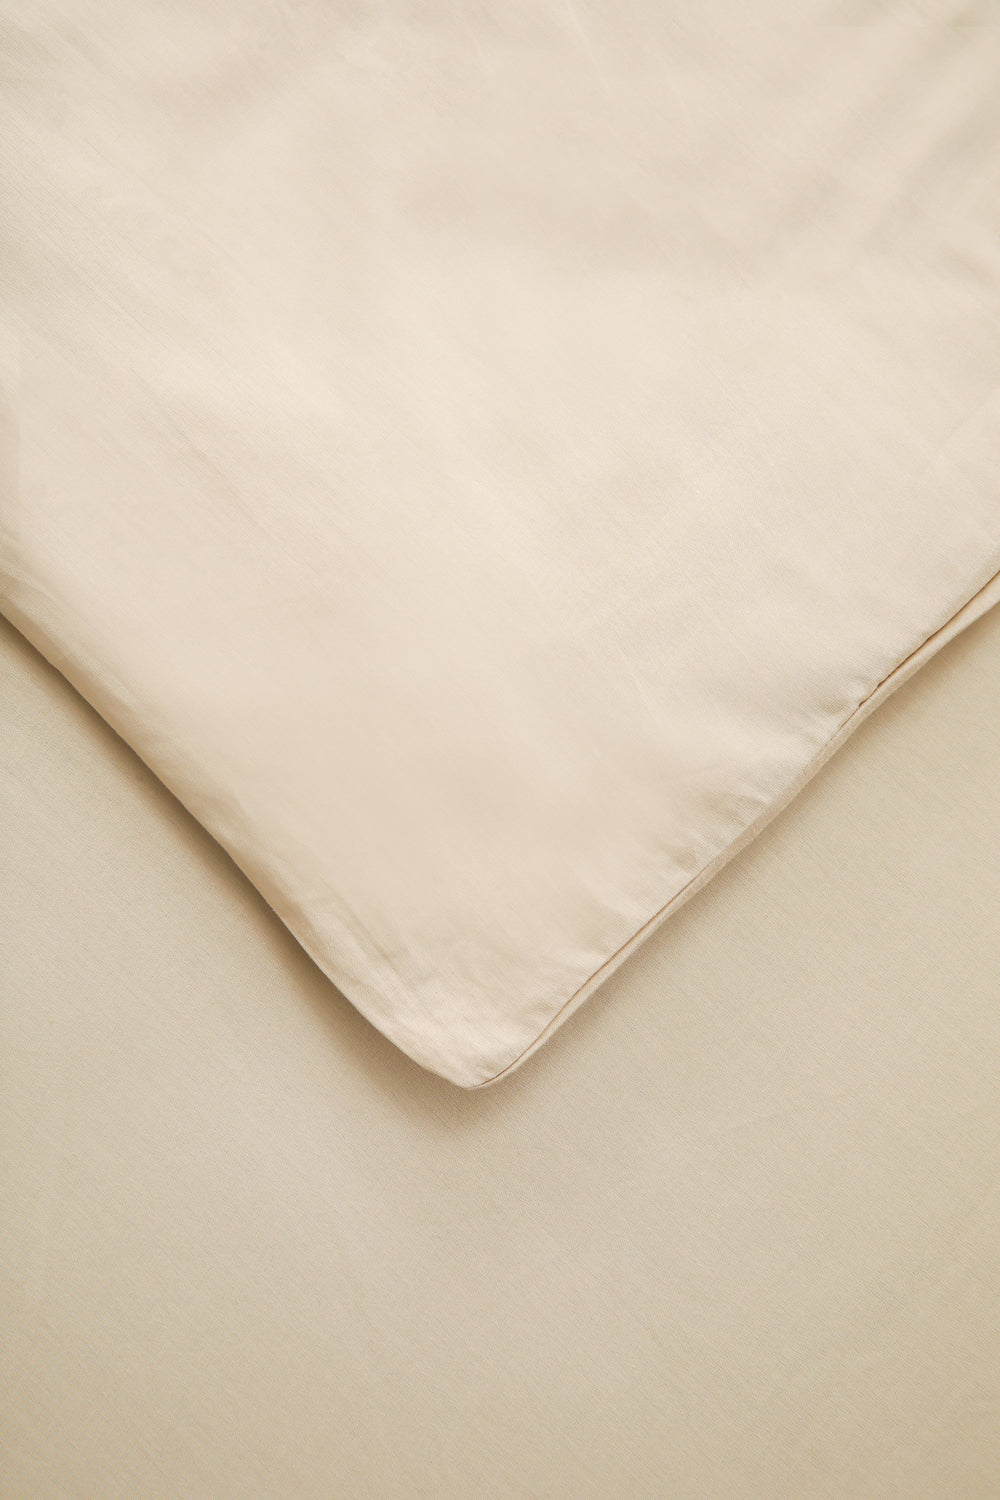 סדין מיטה זוגית רחבה מאוד  200/200 100% כותנה באריגת סאטן בצבע בז'